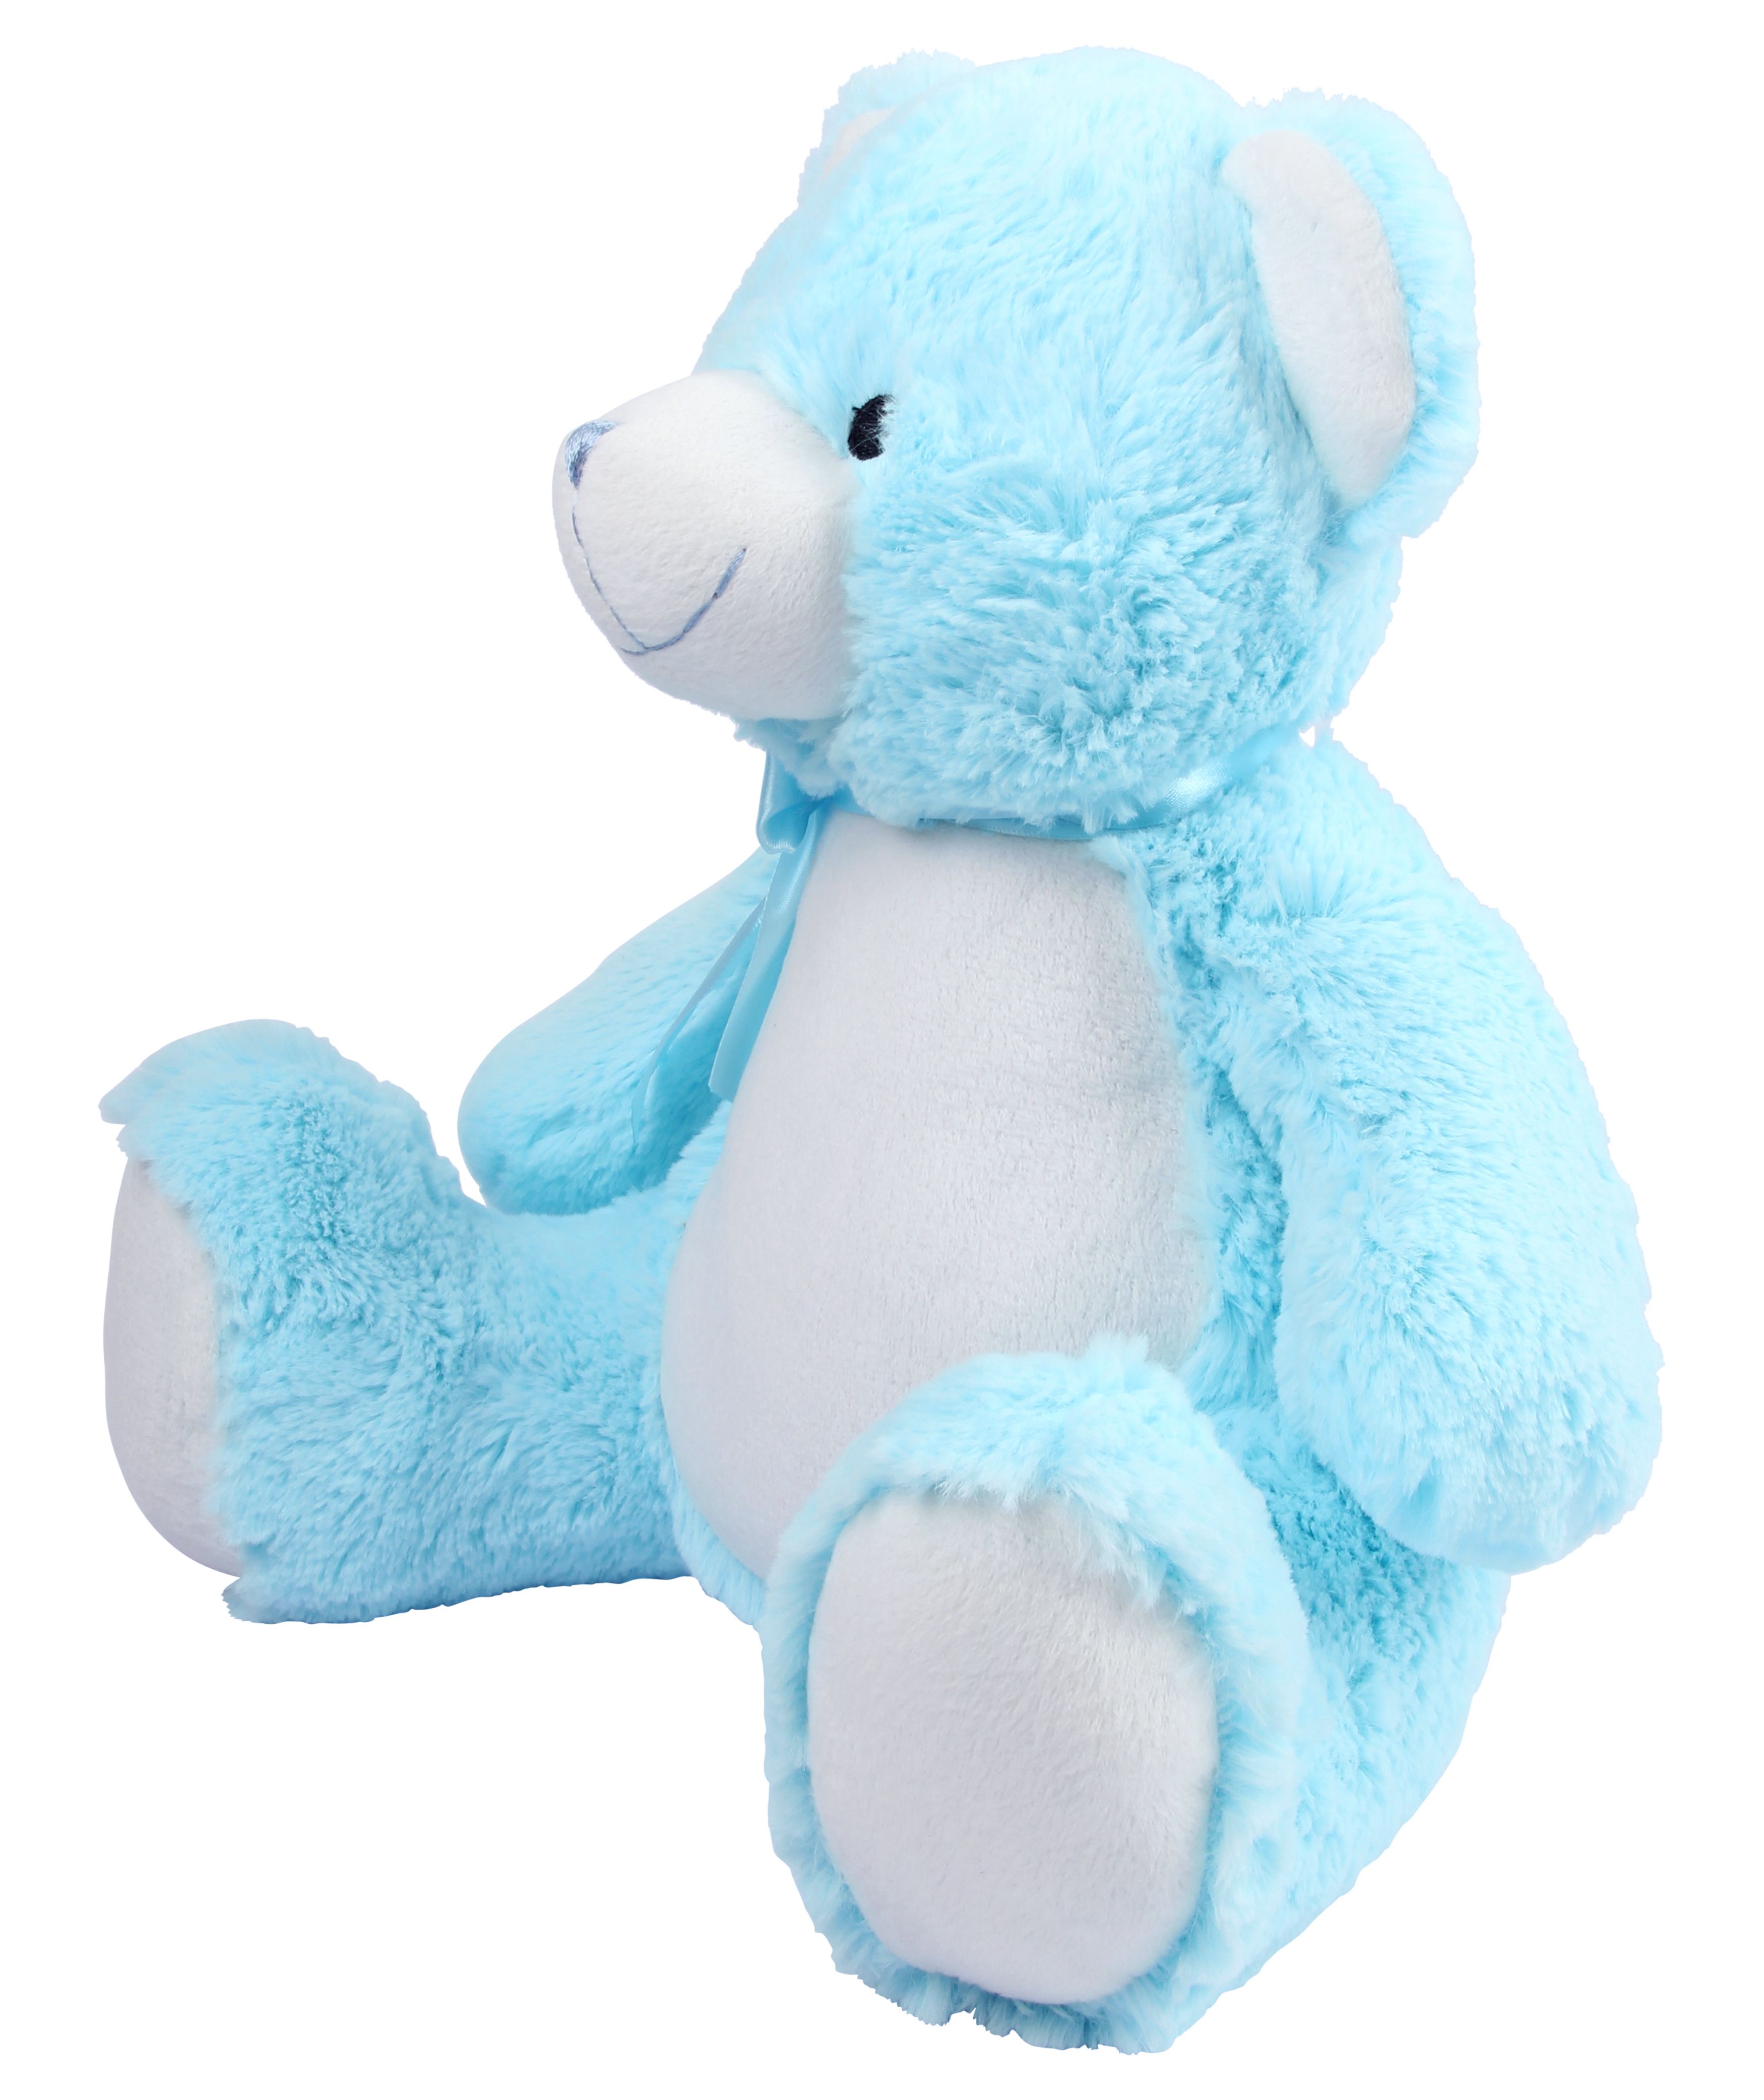 Blue Teddy Bear with Toys. Ролики Teddy Blue. Baby Bear Toy.